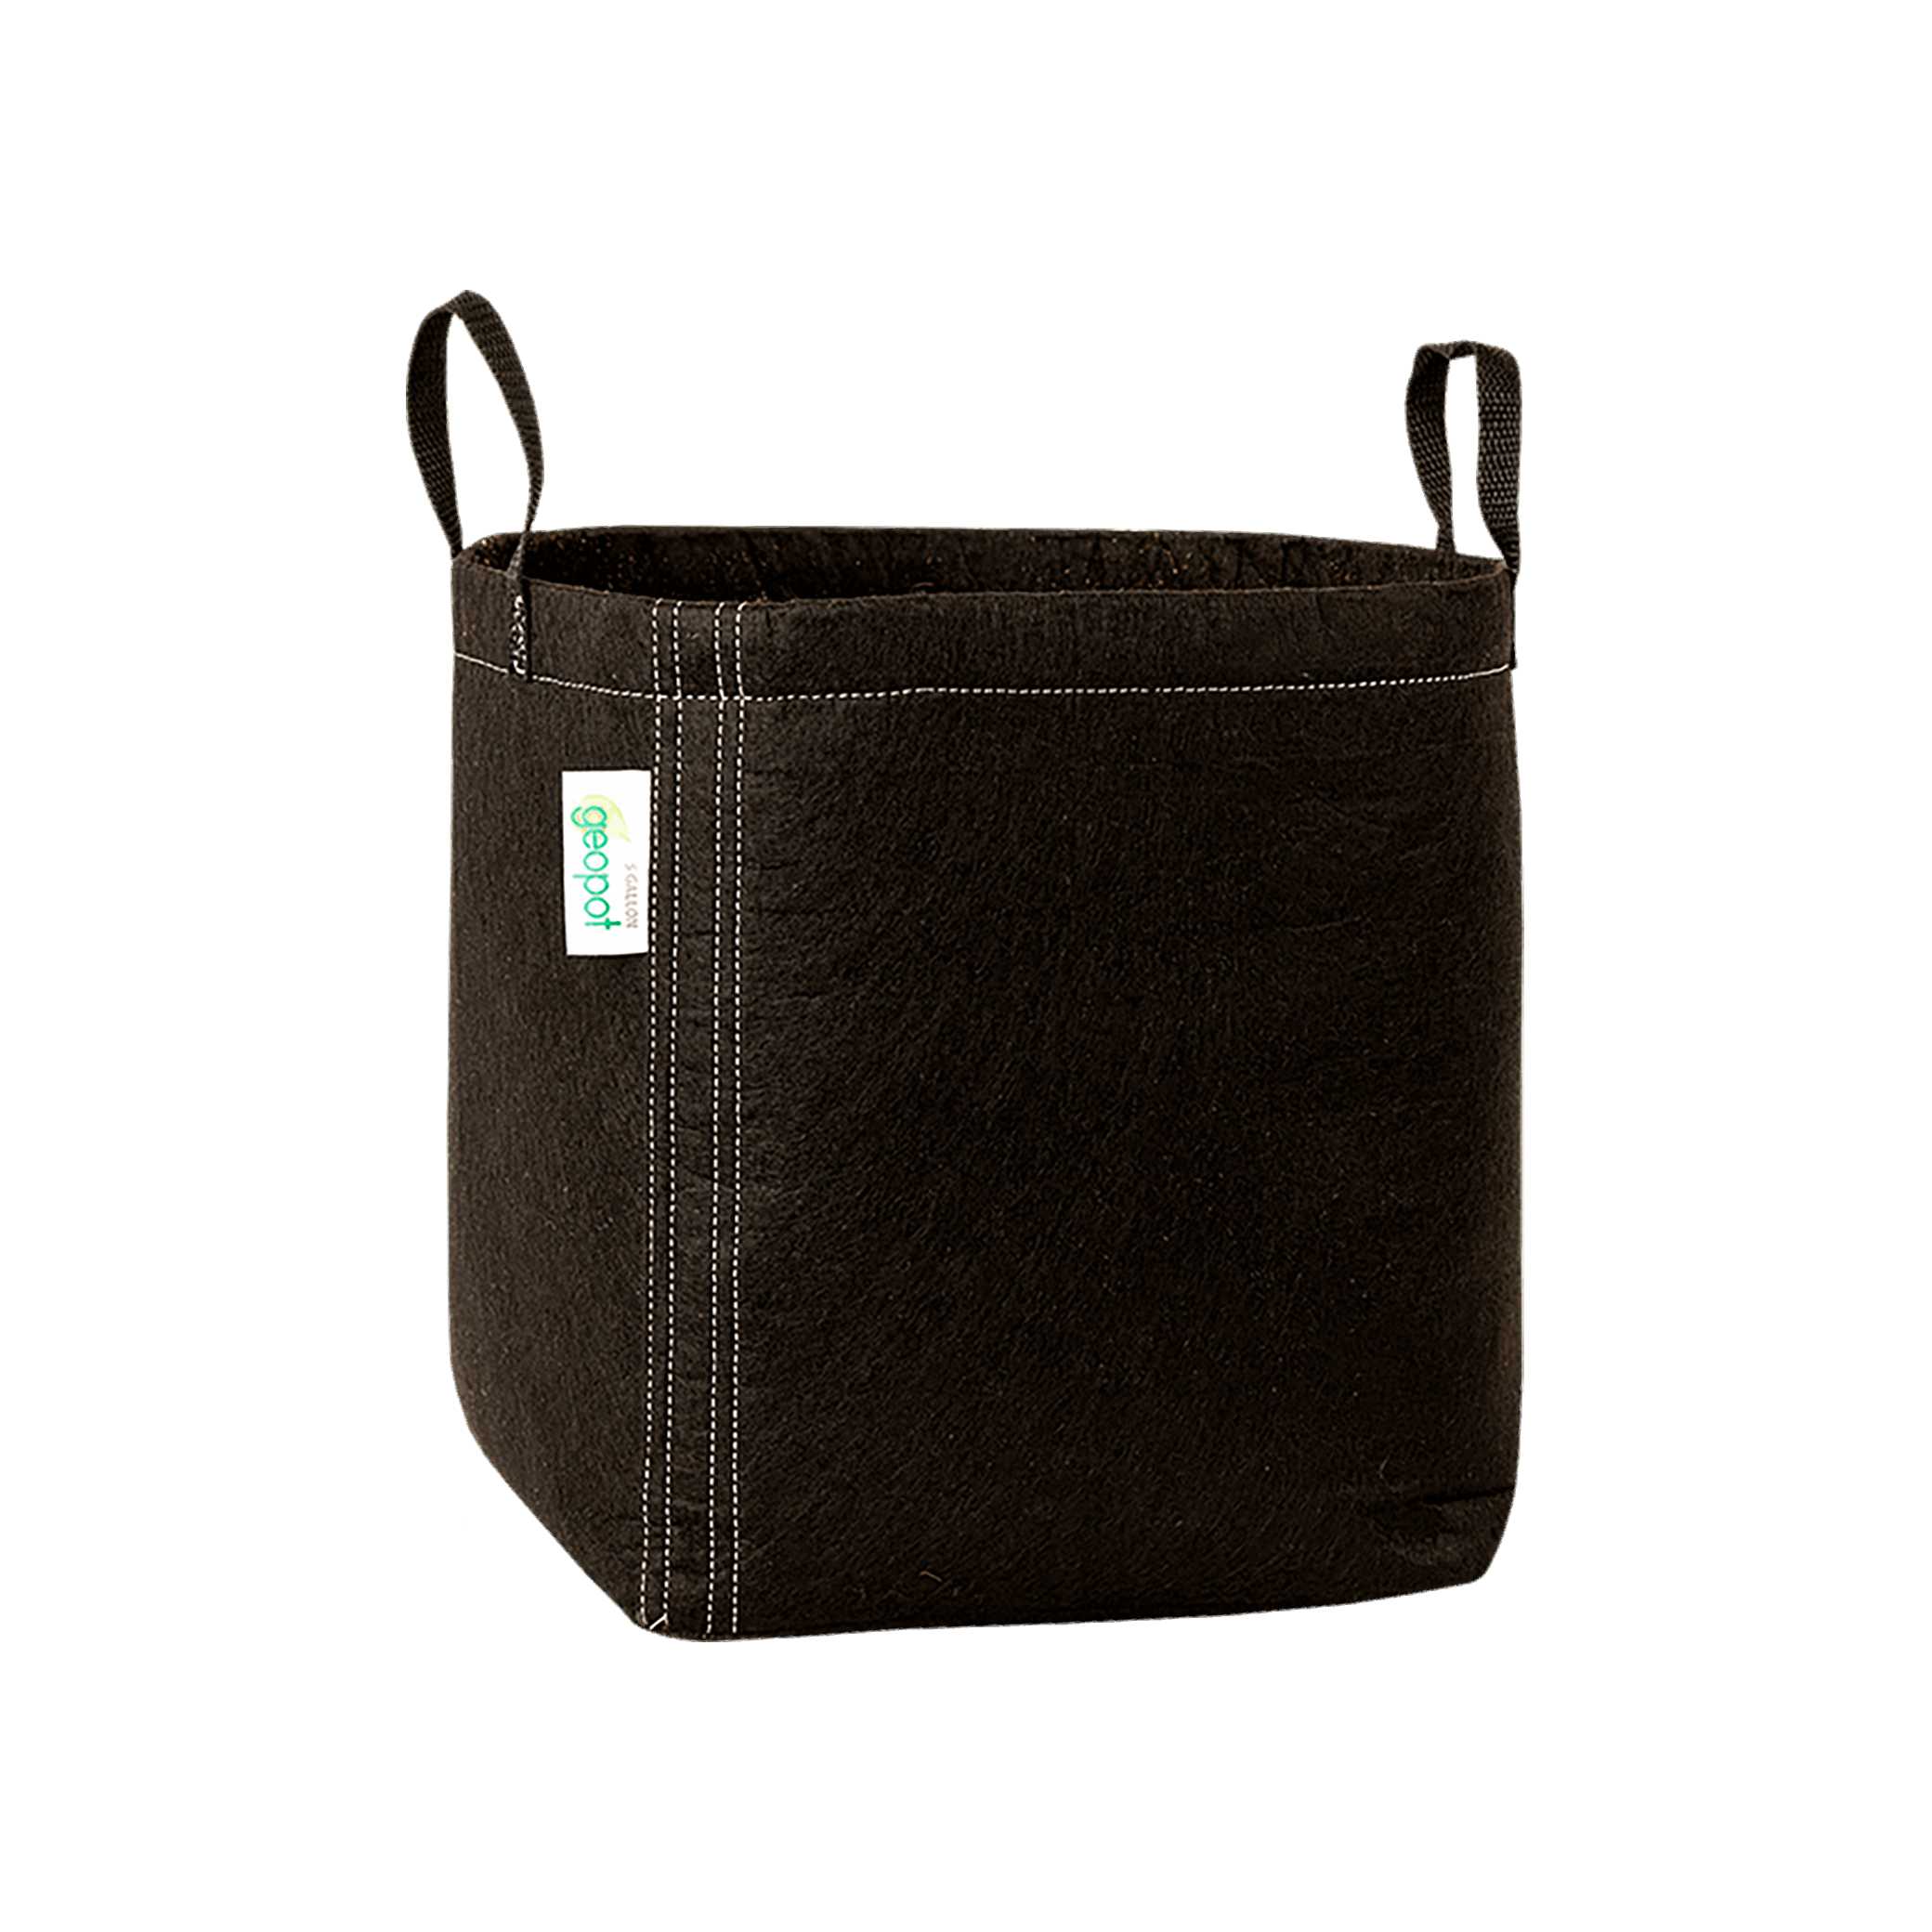 Transparent Handbag With Square Handles